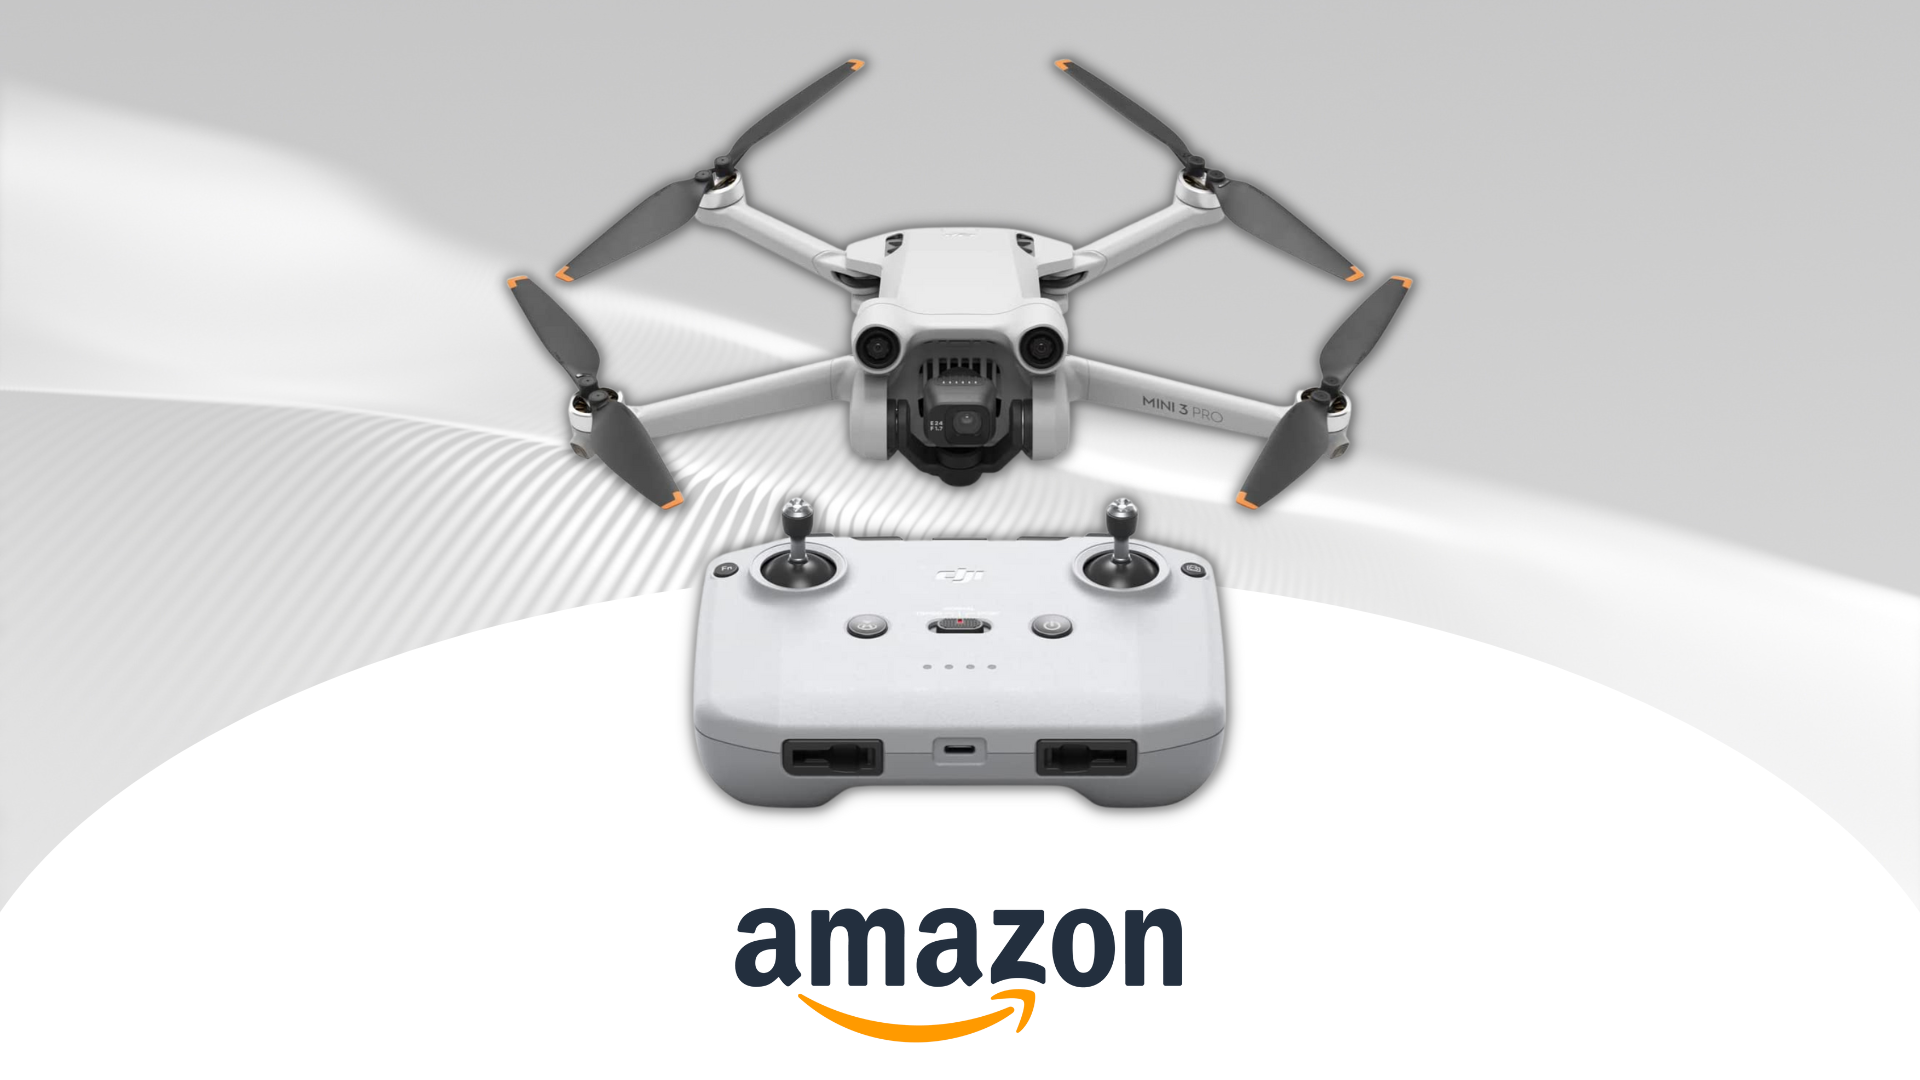 Il drone è disponibile qui a prezzi interessanti